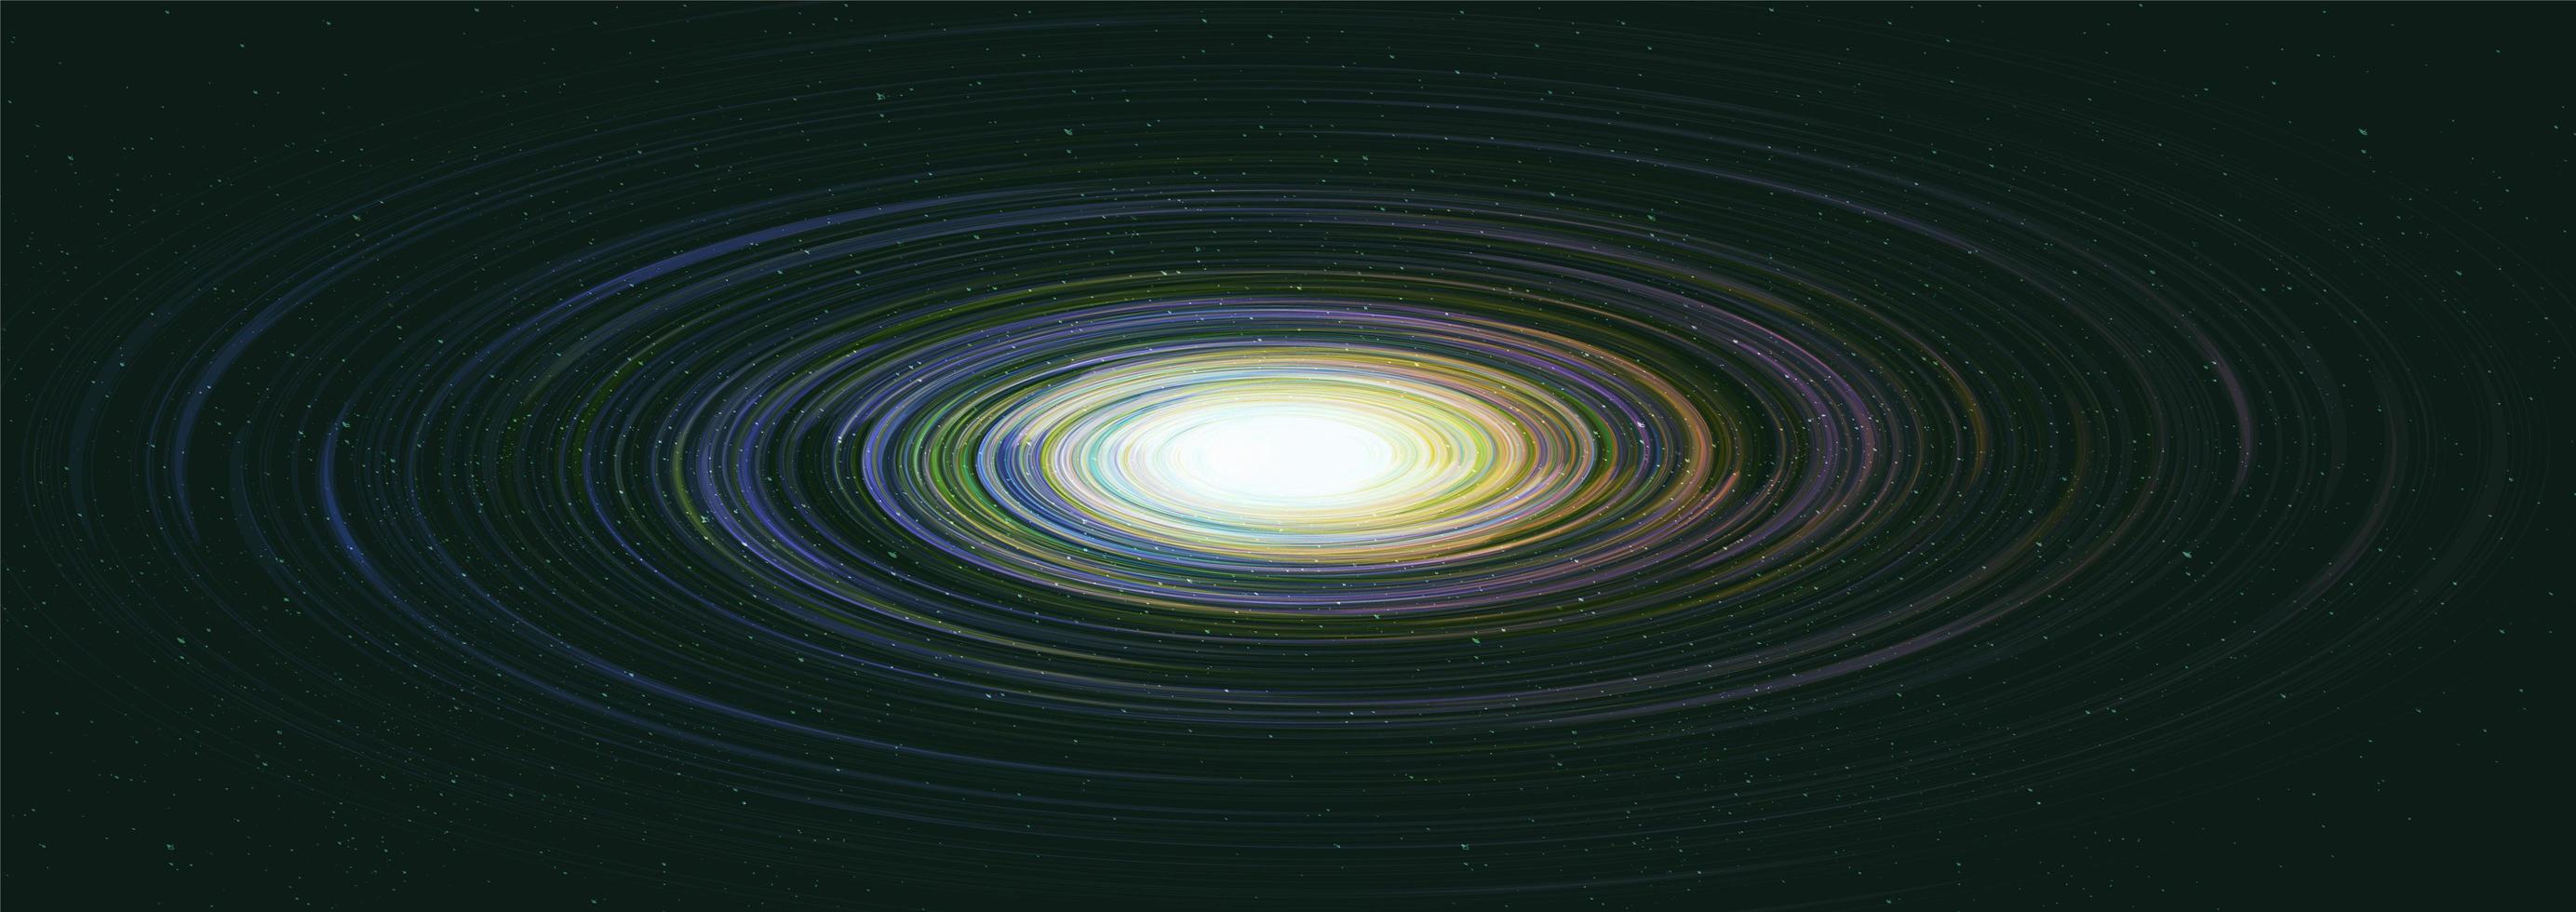 galaxie panoramique avec spirale de la voie lactée vecteur